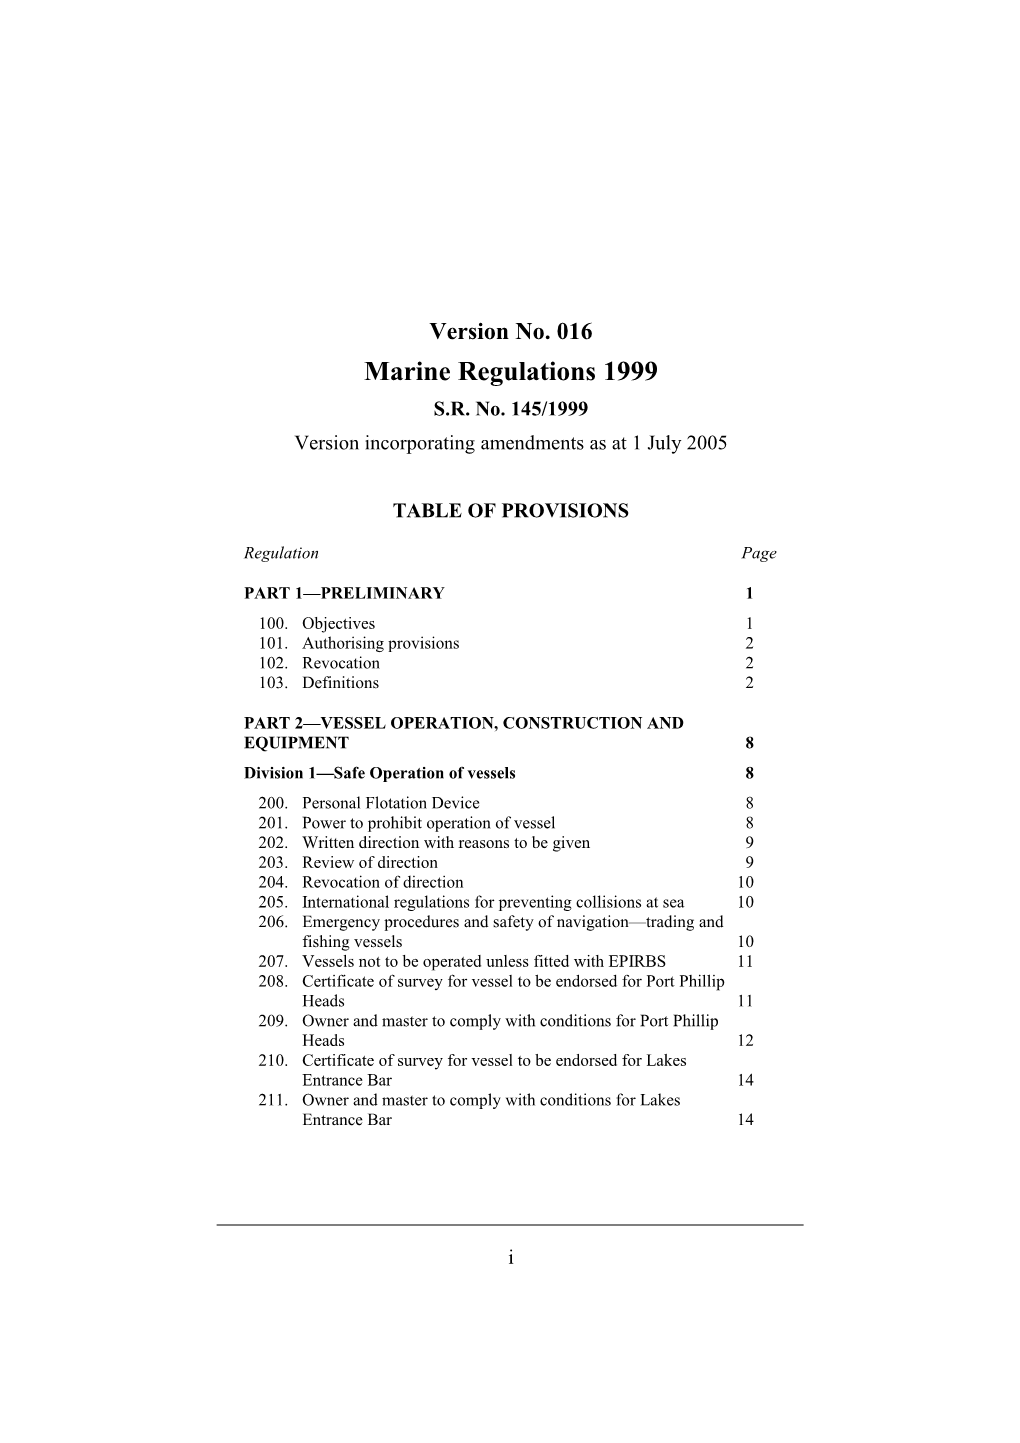 Version Incorporating Amendments As at 1 July 2005